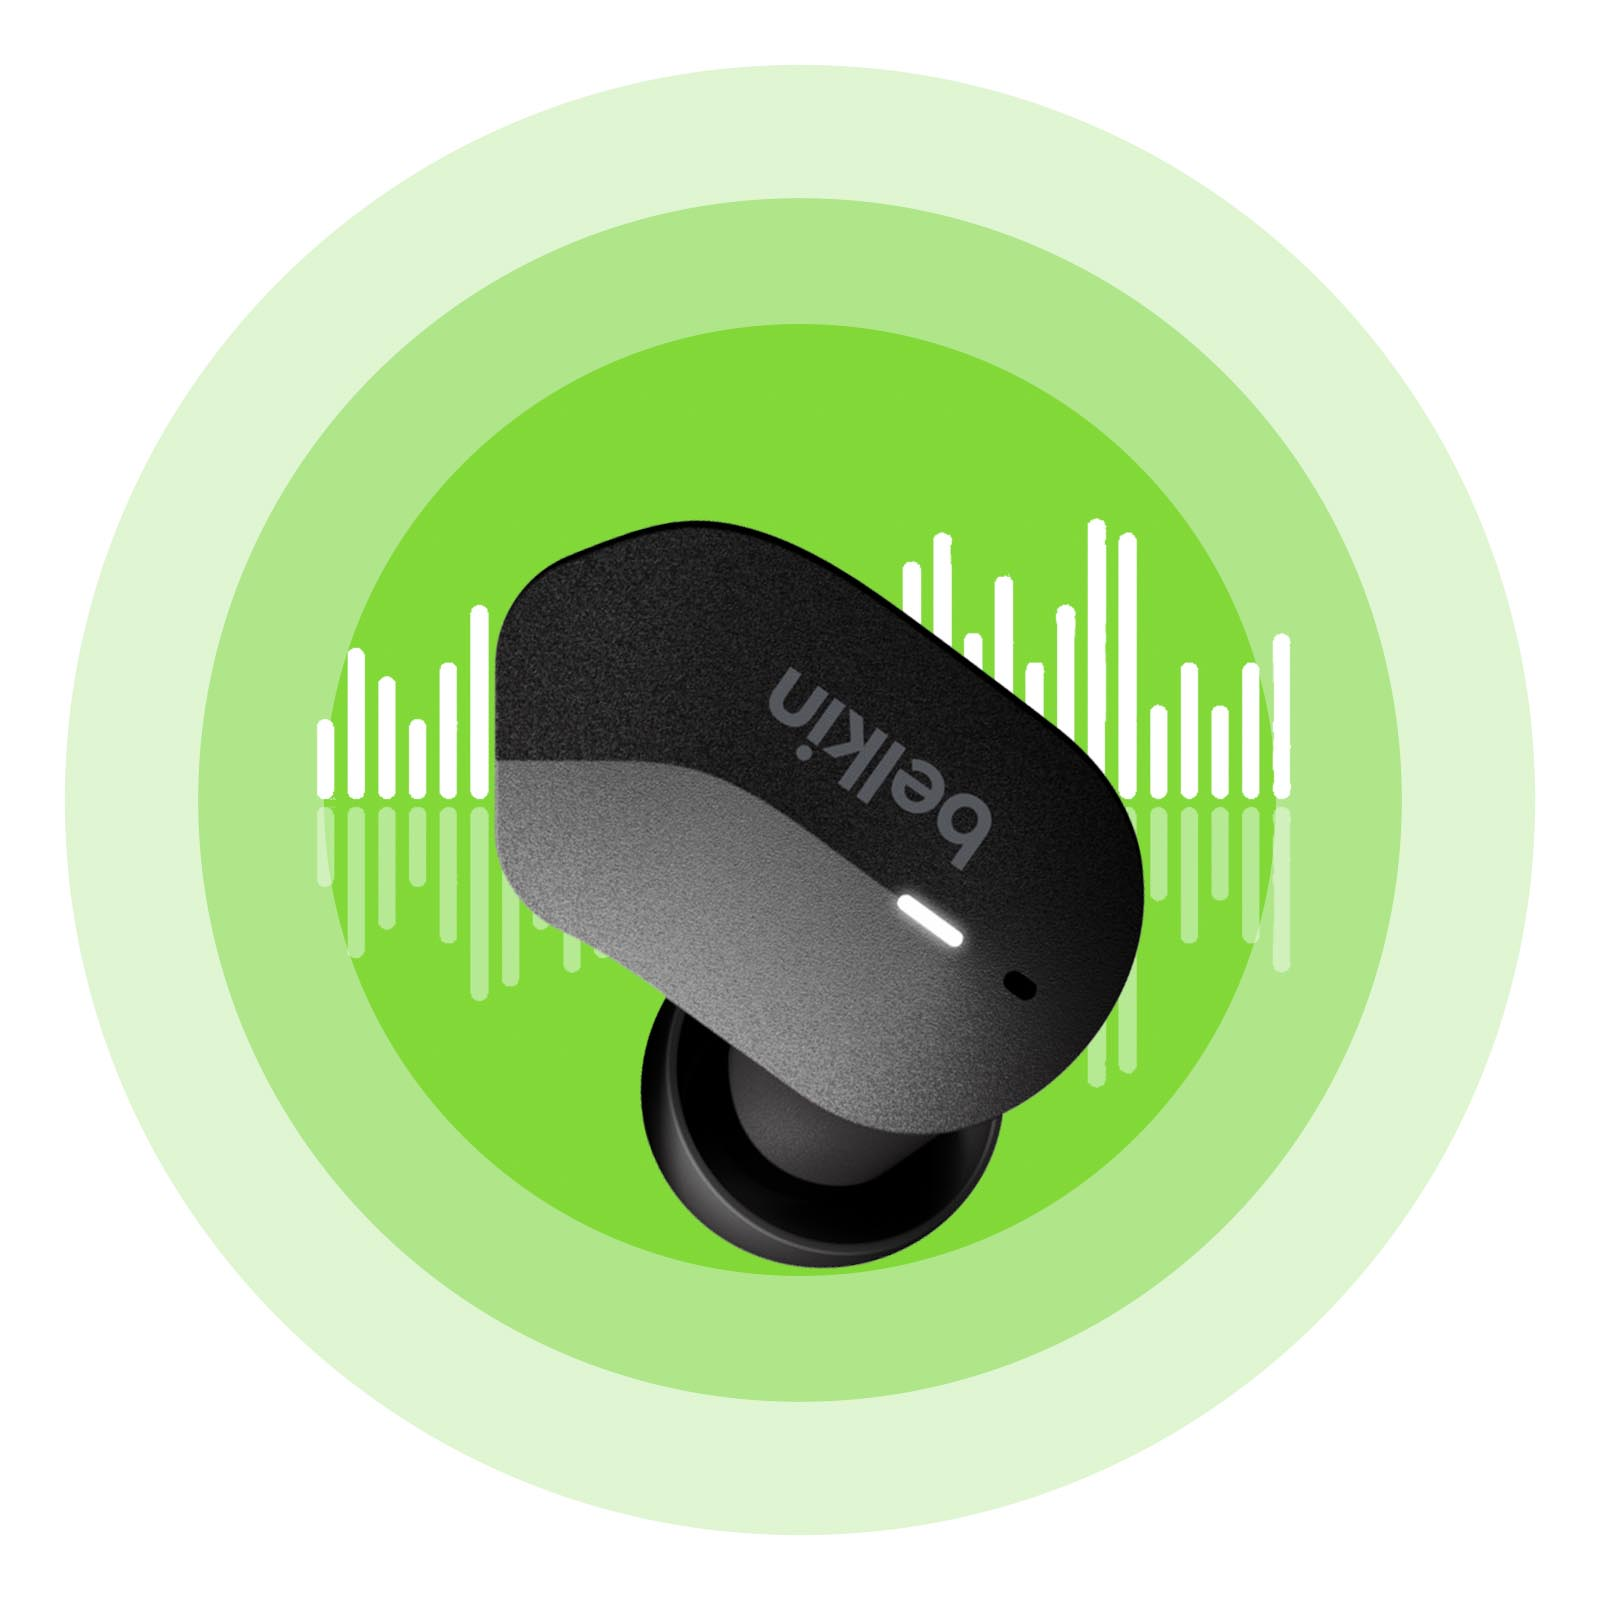 BELKIN Sport in-ear SOUNDFORM Bluetooth-Kopfhörer Bluetooth Kopfhörer